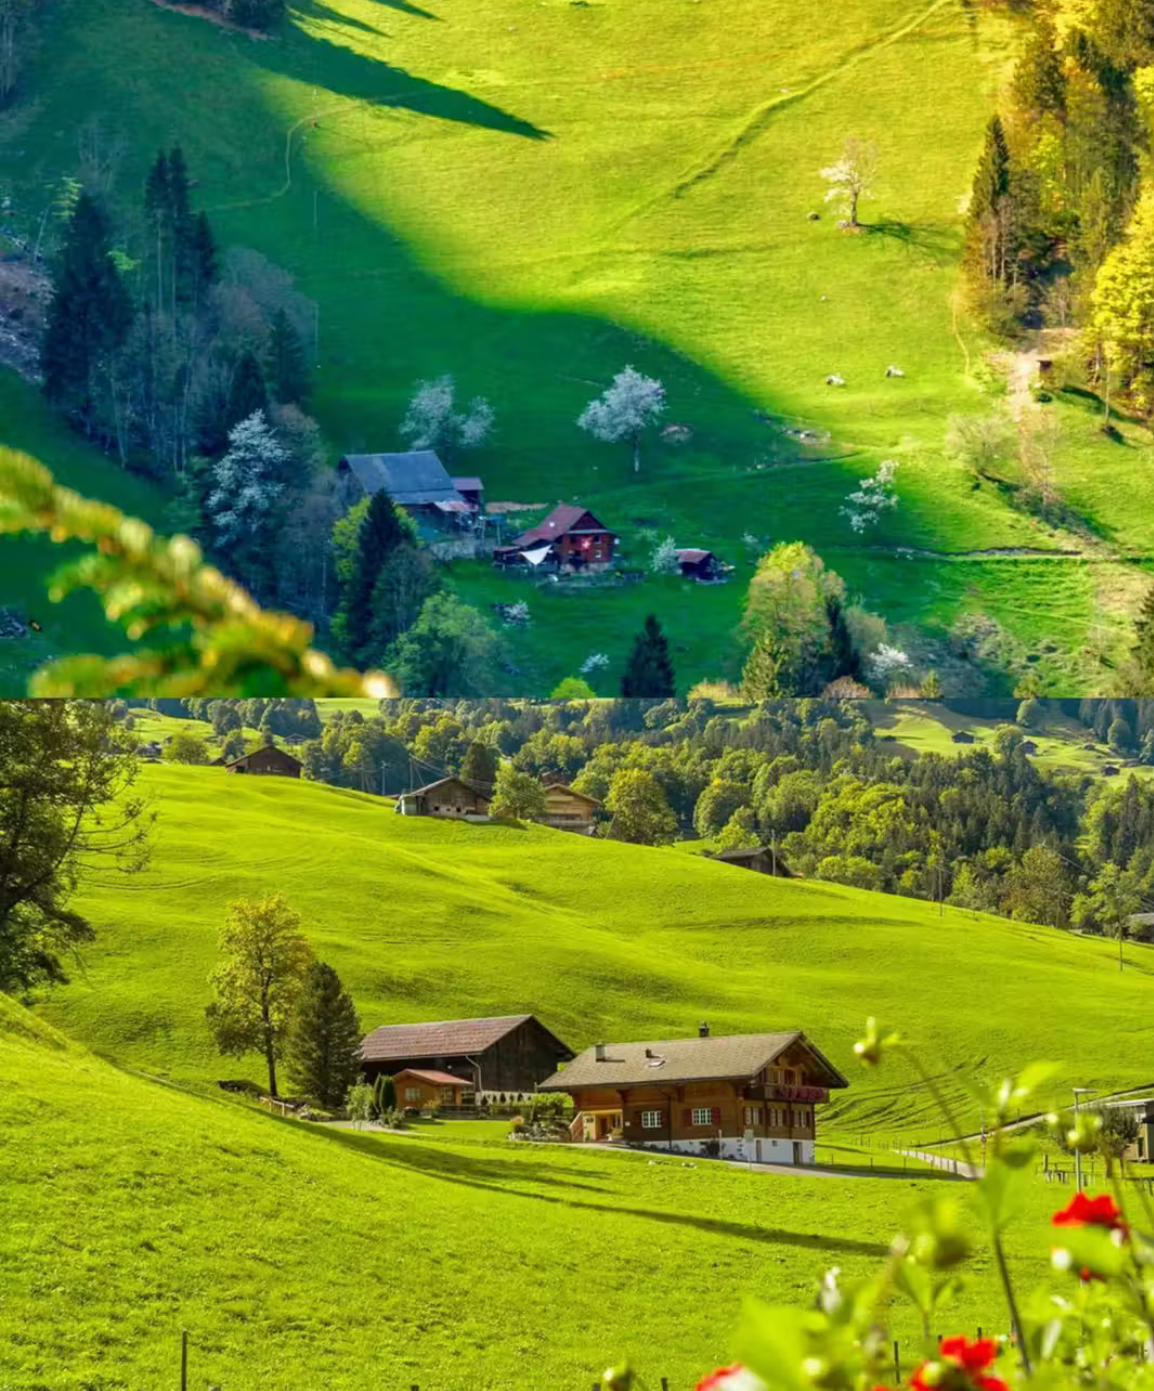 童话般的世界，美到窒息，有机会过来走一走吧多 #你身边的爱乐之城同款景点 #瑞士合瑞士有着壮丽的自然